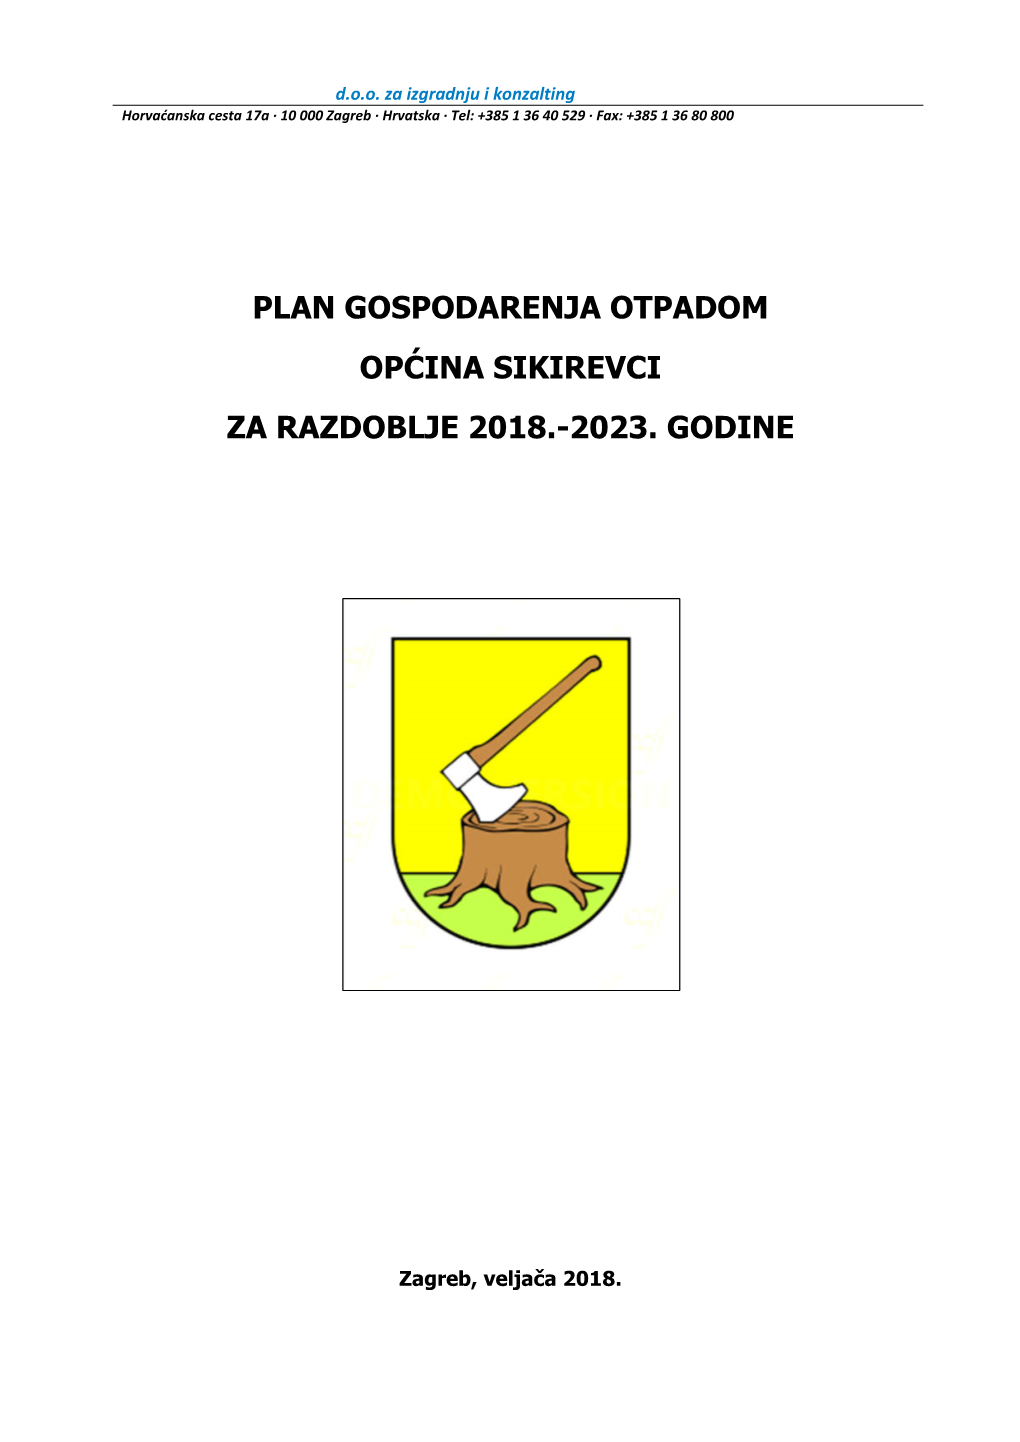 Plan Gospodarenja Otpadom Općina Sikirevci Za Razdoblje 2018.-2023. Godine